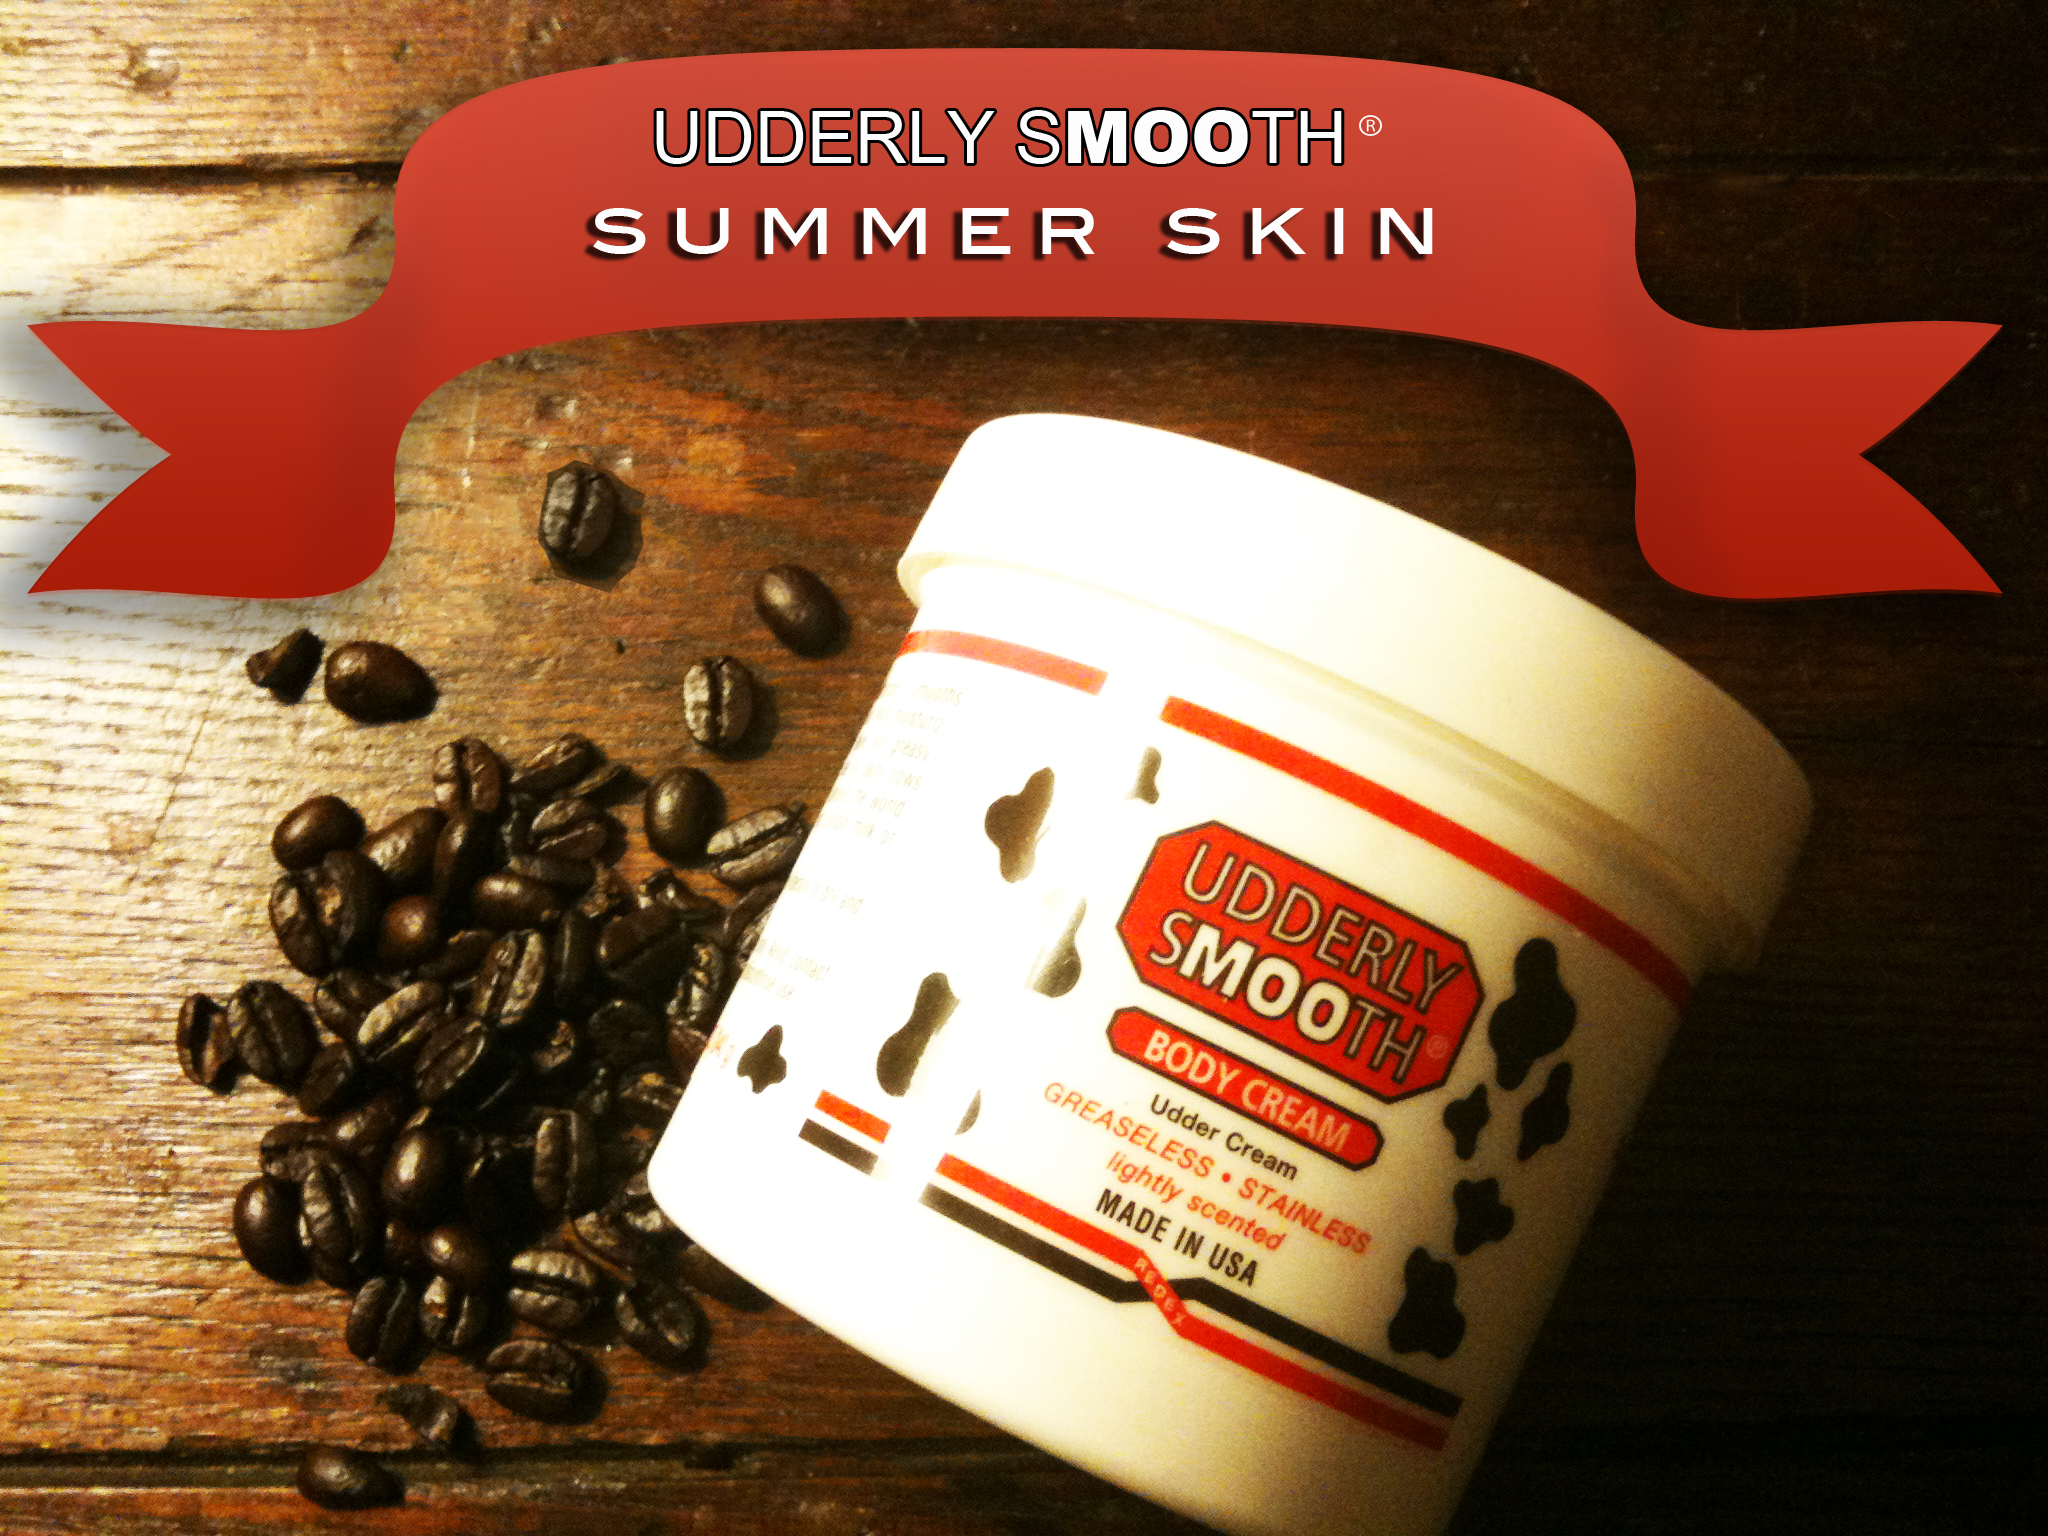 Udderly Smooth Summer Skin